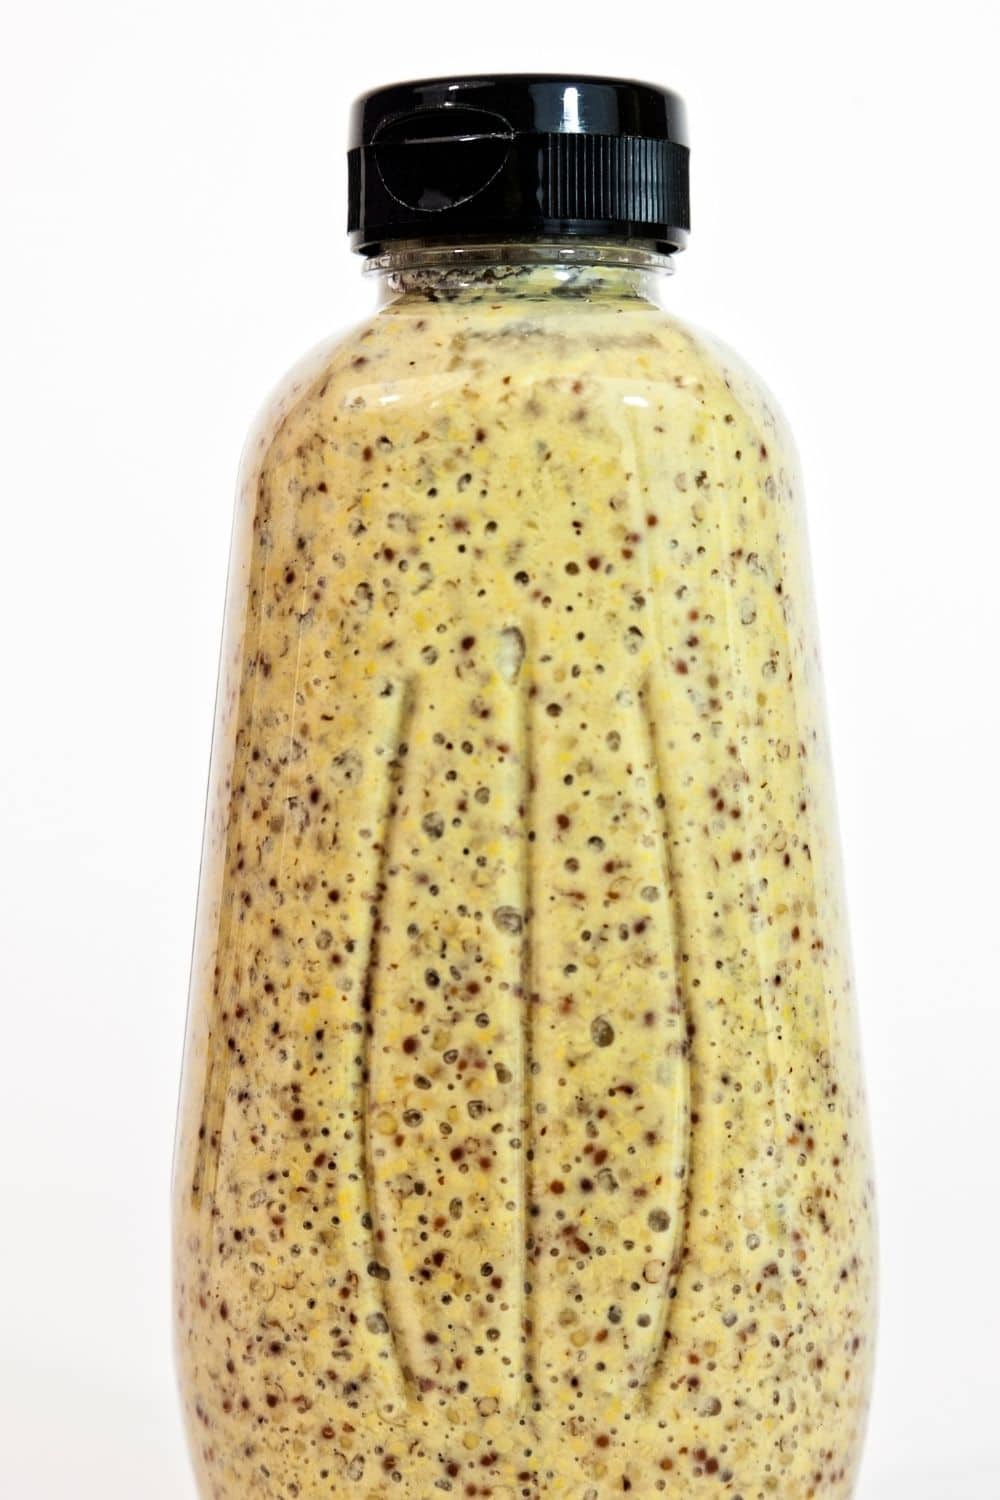 brown mustard in a bottle